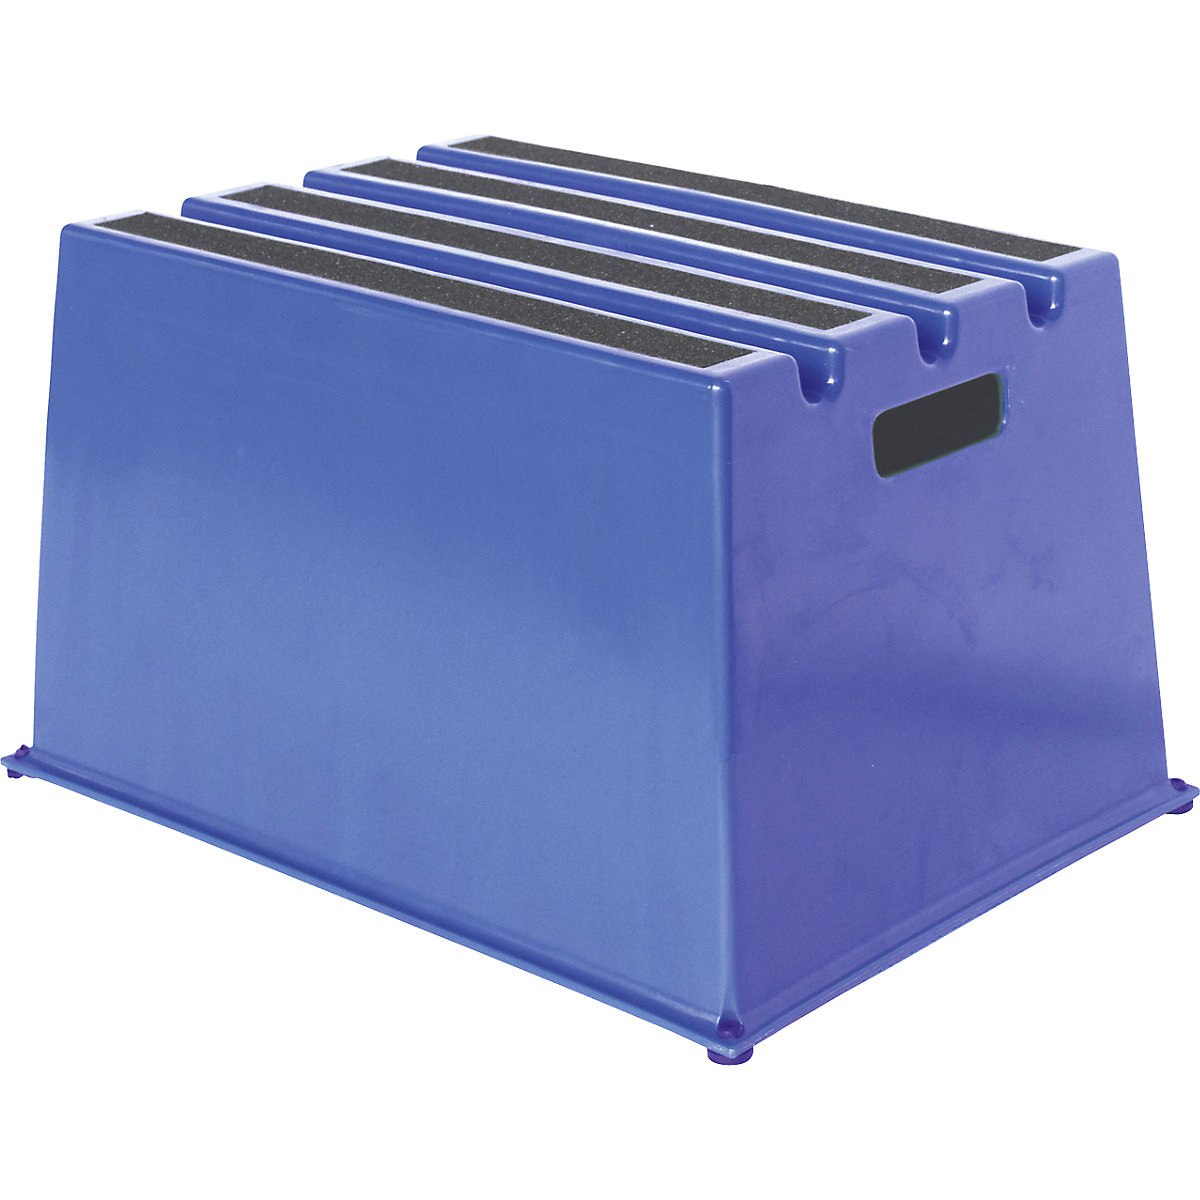 Plastične ljestve s protukliznim stepenicama – Twinco, nosivost 150 kg, 1 stepenica, u plavoj boji-7